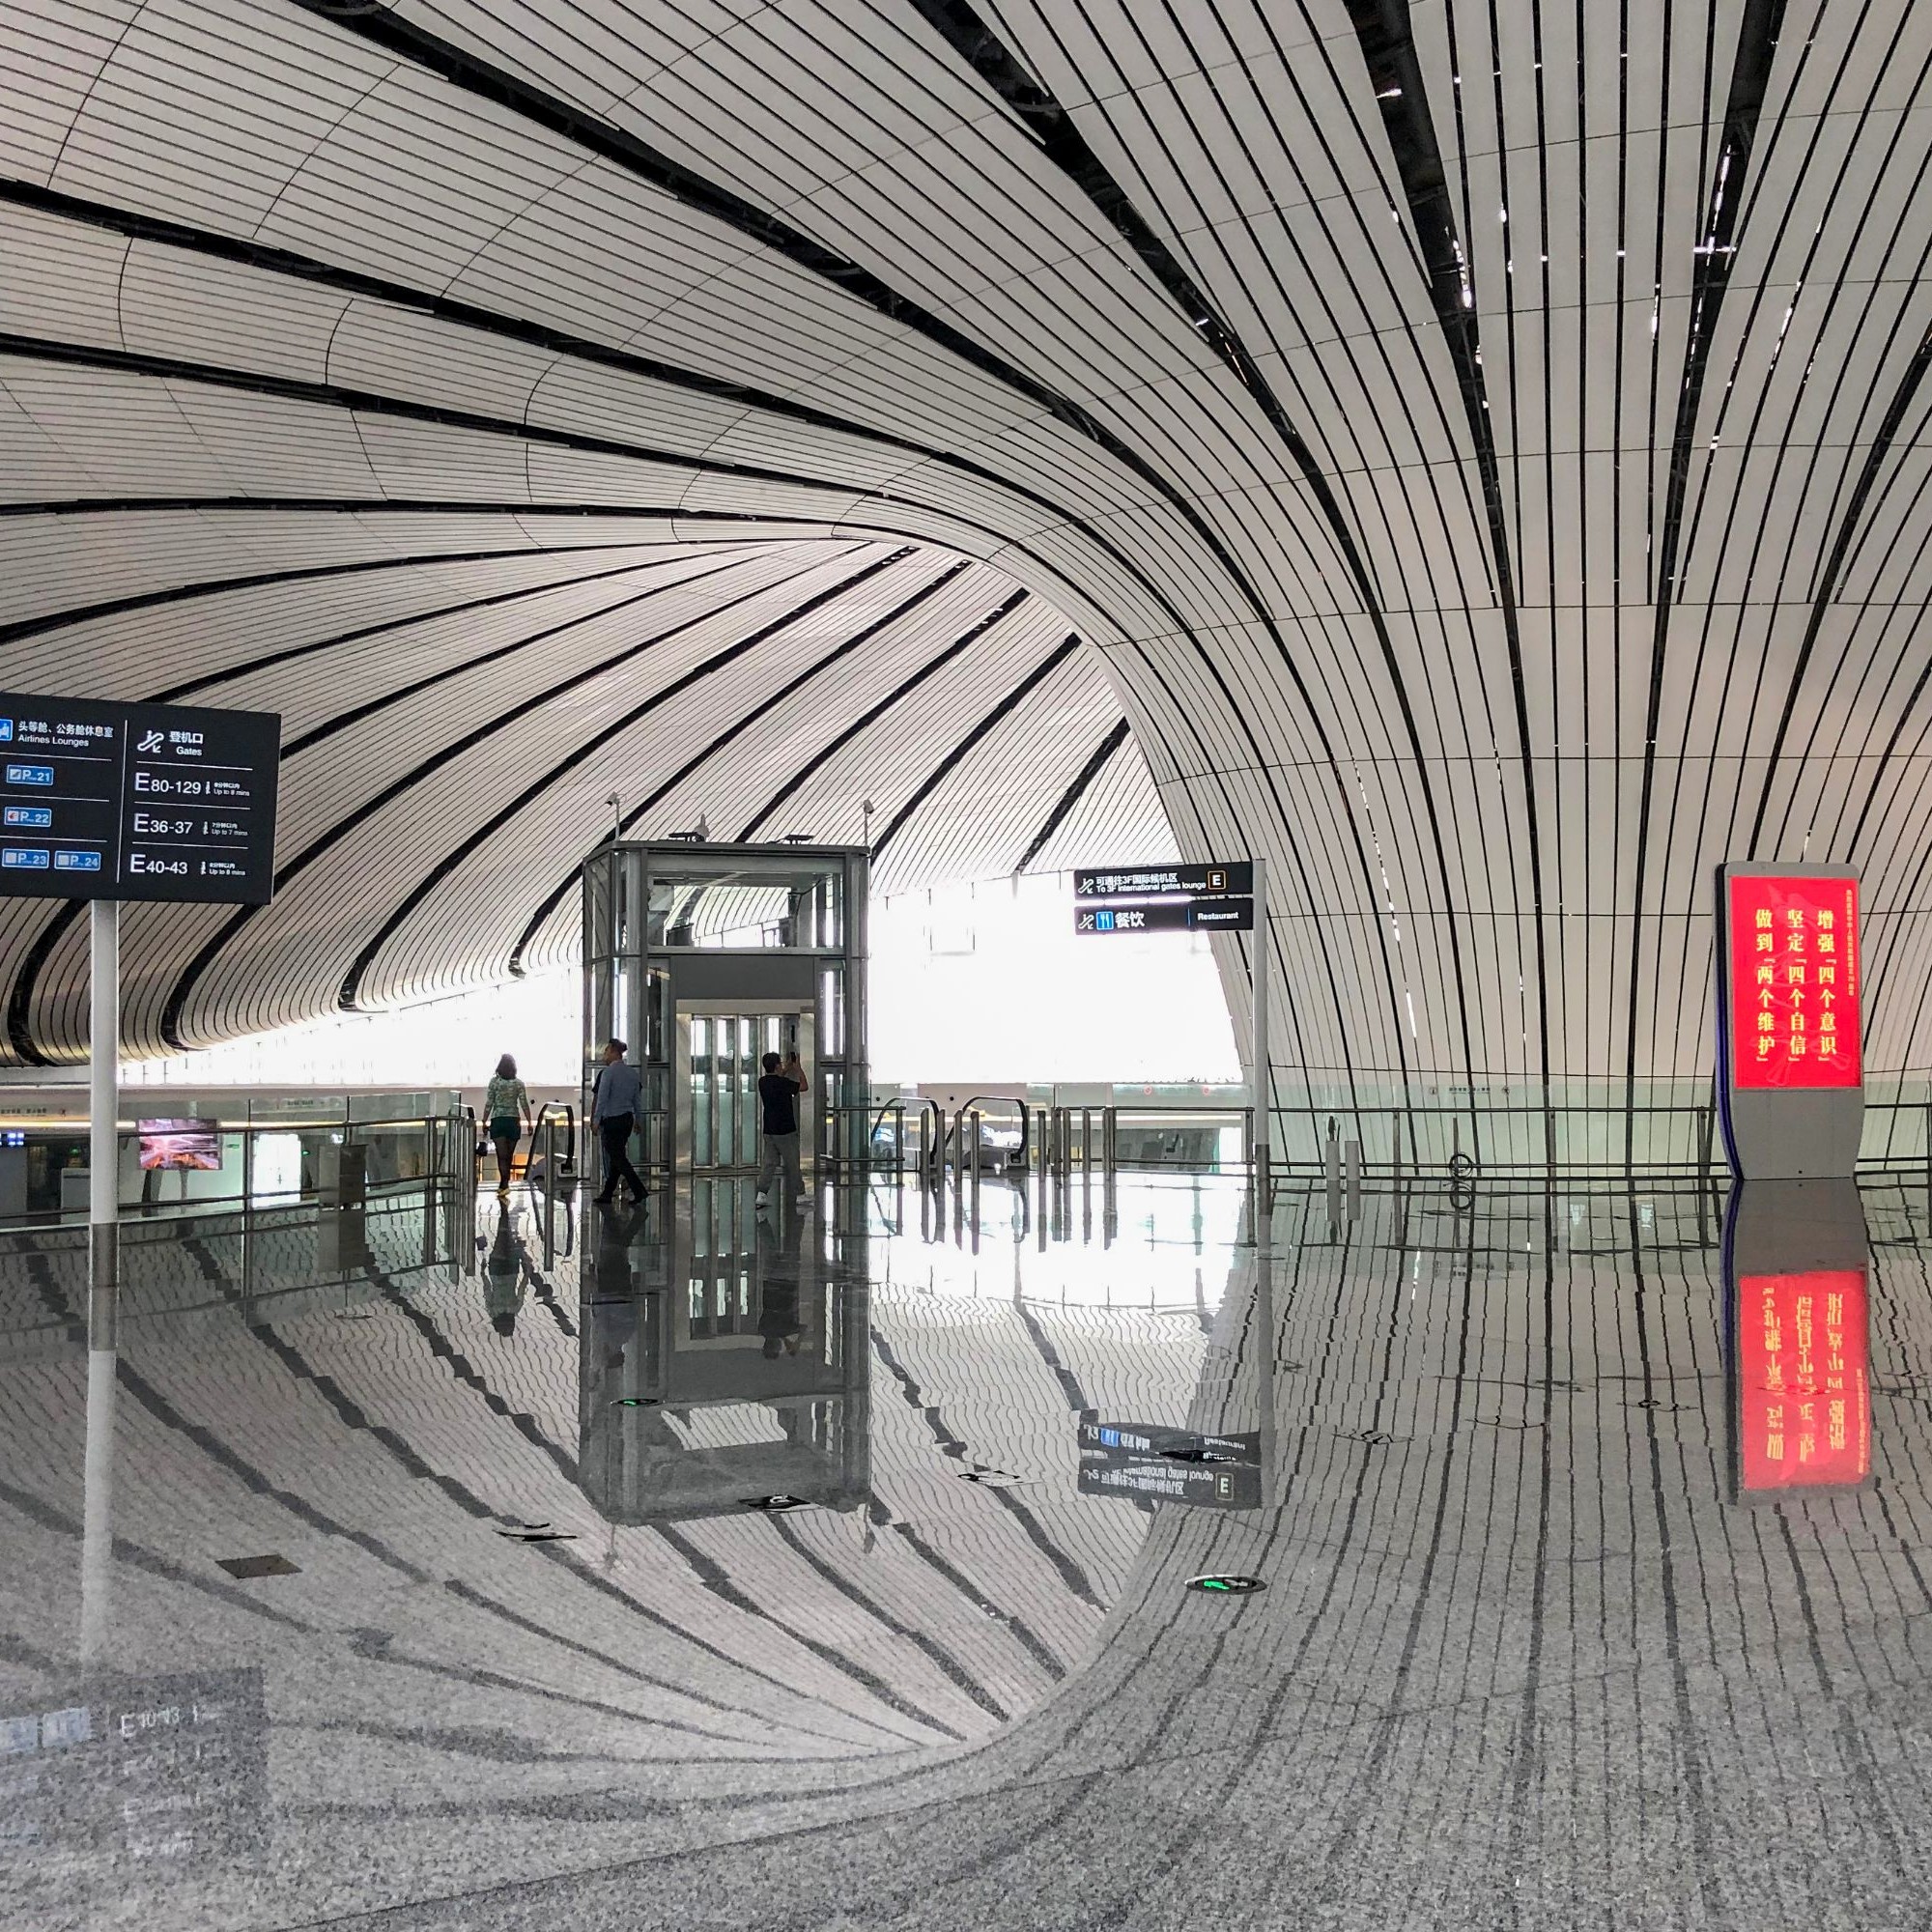 Einblick in den Innenbereich des neuen Mega-Flughafens in Peking.